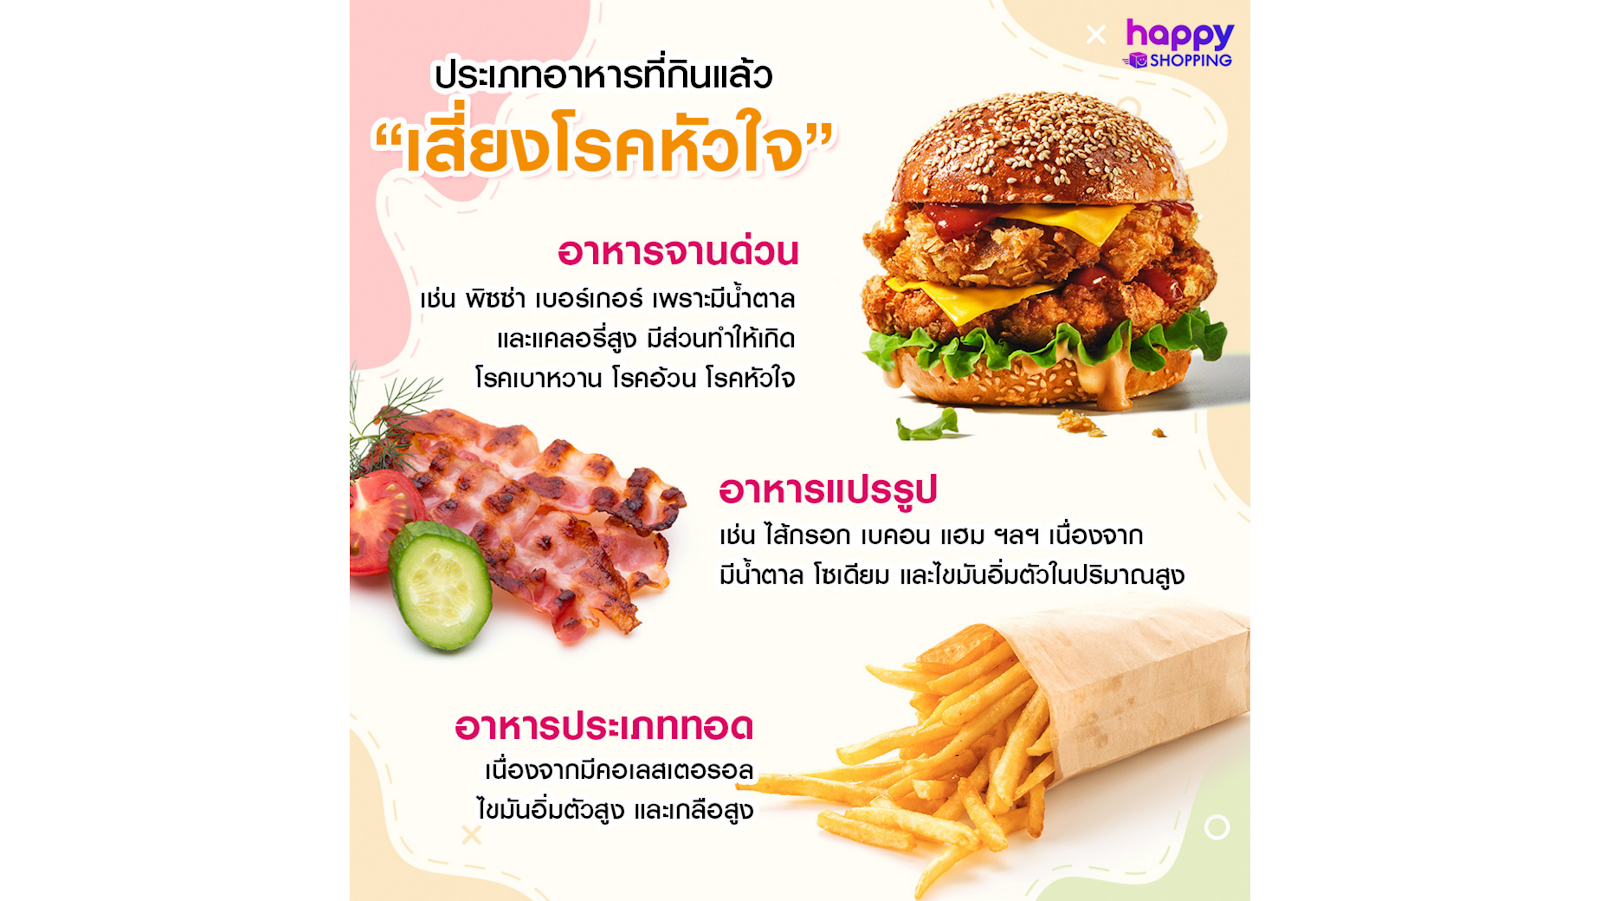 กินหวานจัด เสี่ยงโรคหัวใจ ดูแลสุขภาพด้วยสมุนไพรไทย